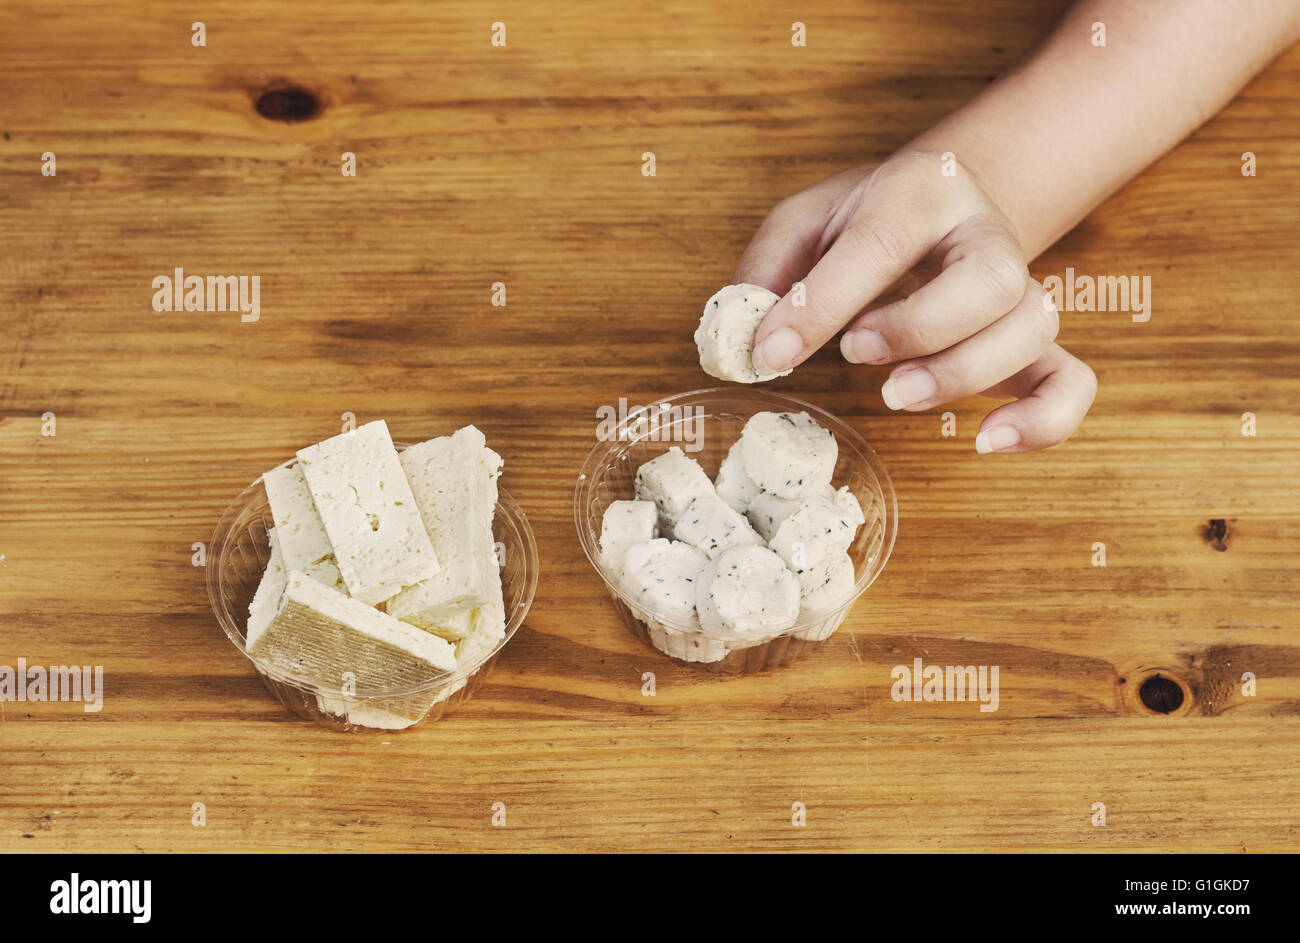 Ragazza prendere in mano una fetta di formaggio di pecora con potherbs Foto Stock